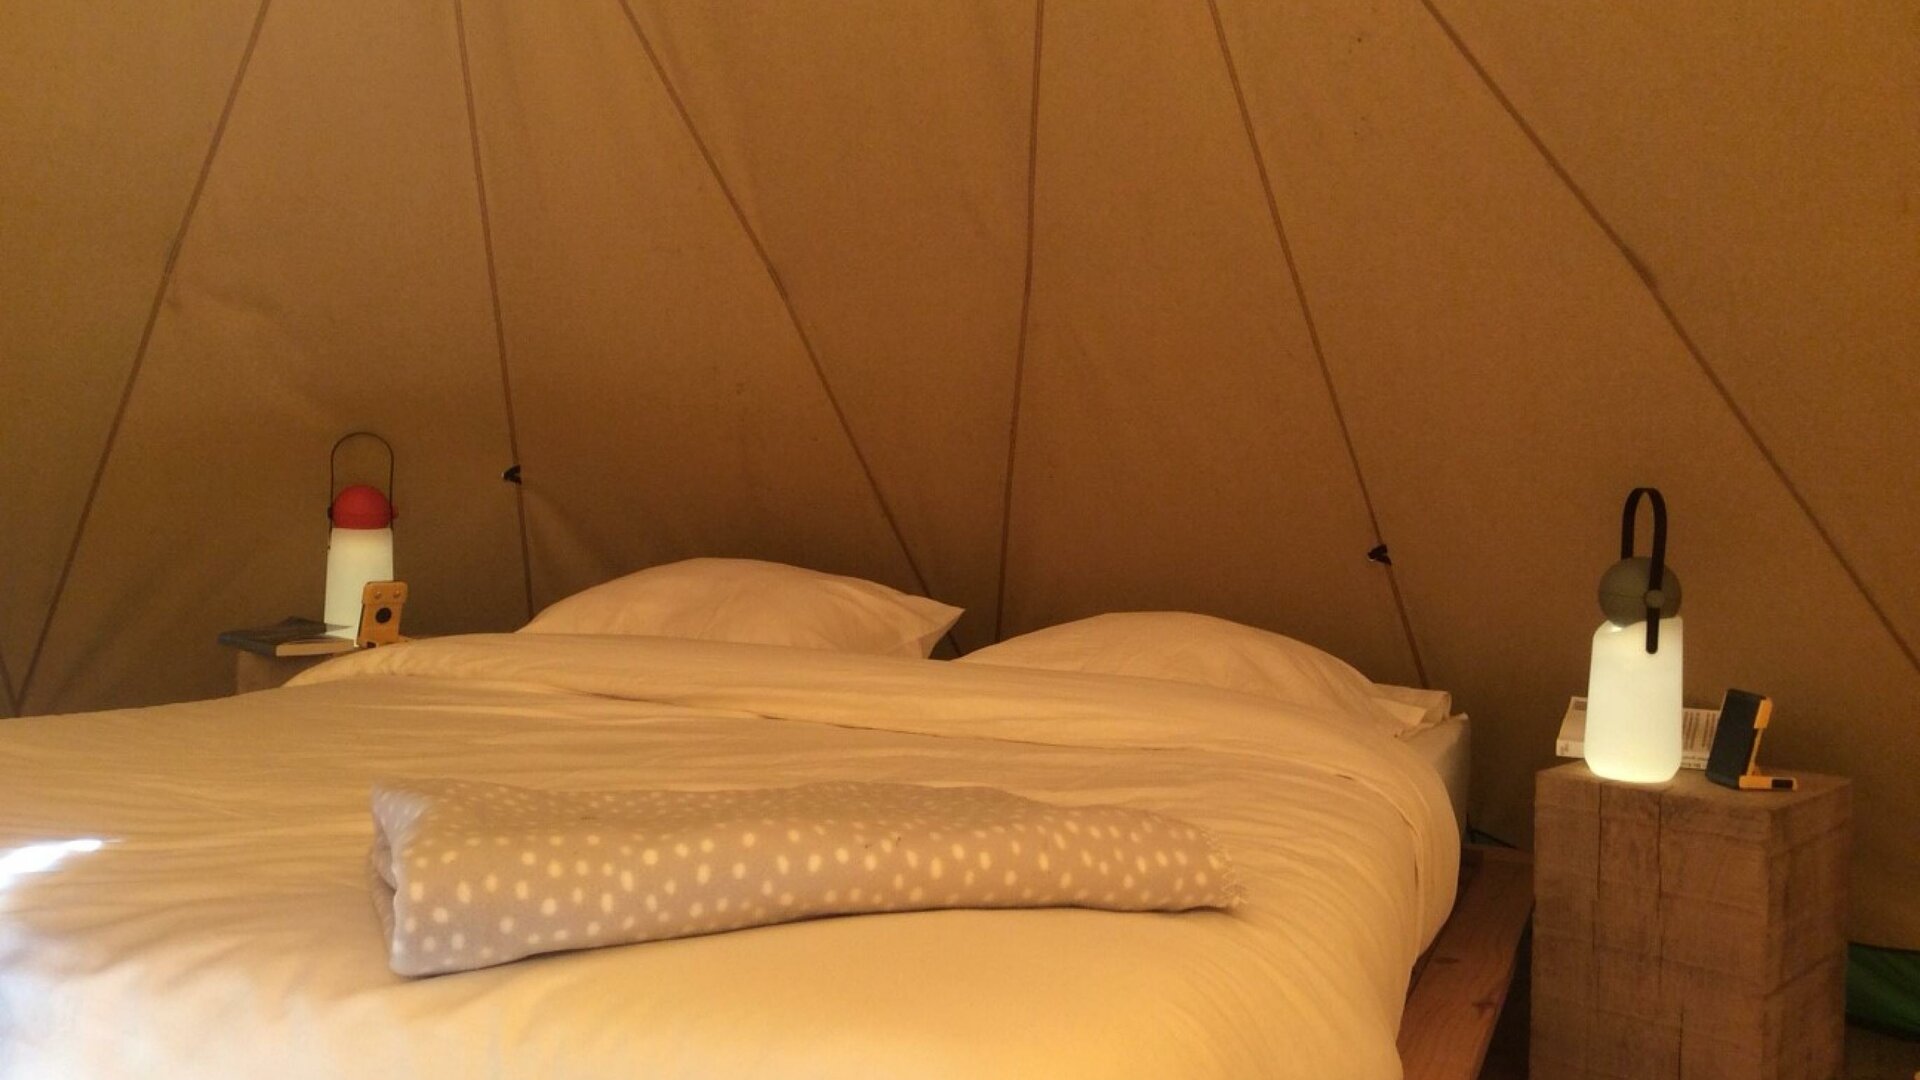 Tipi Lodge - Dubbelbed met mobiele sfeerlampen. Bed- en badlinnen zijn standaard voorzien.